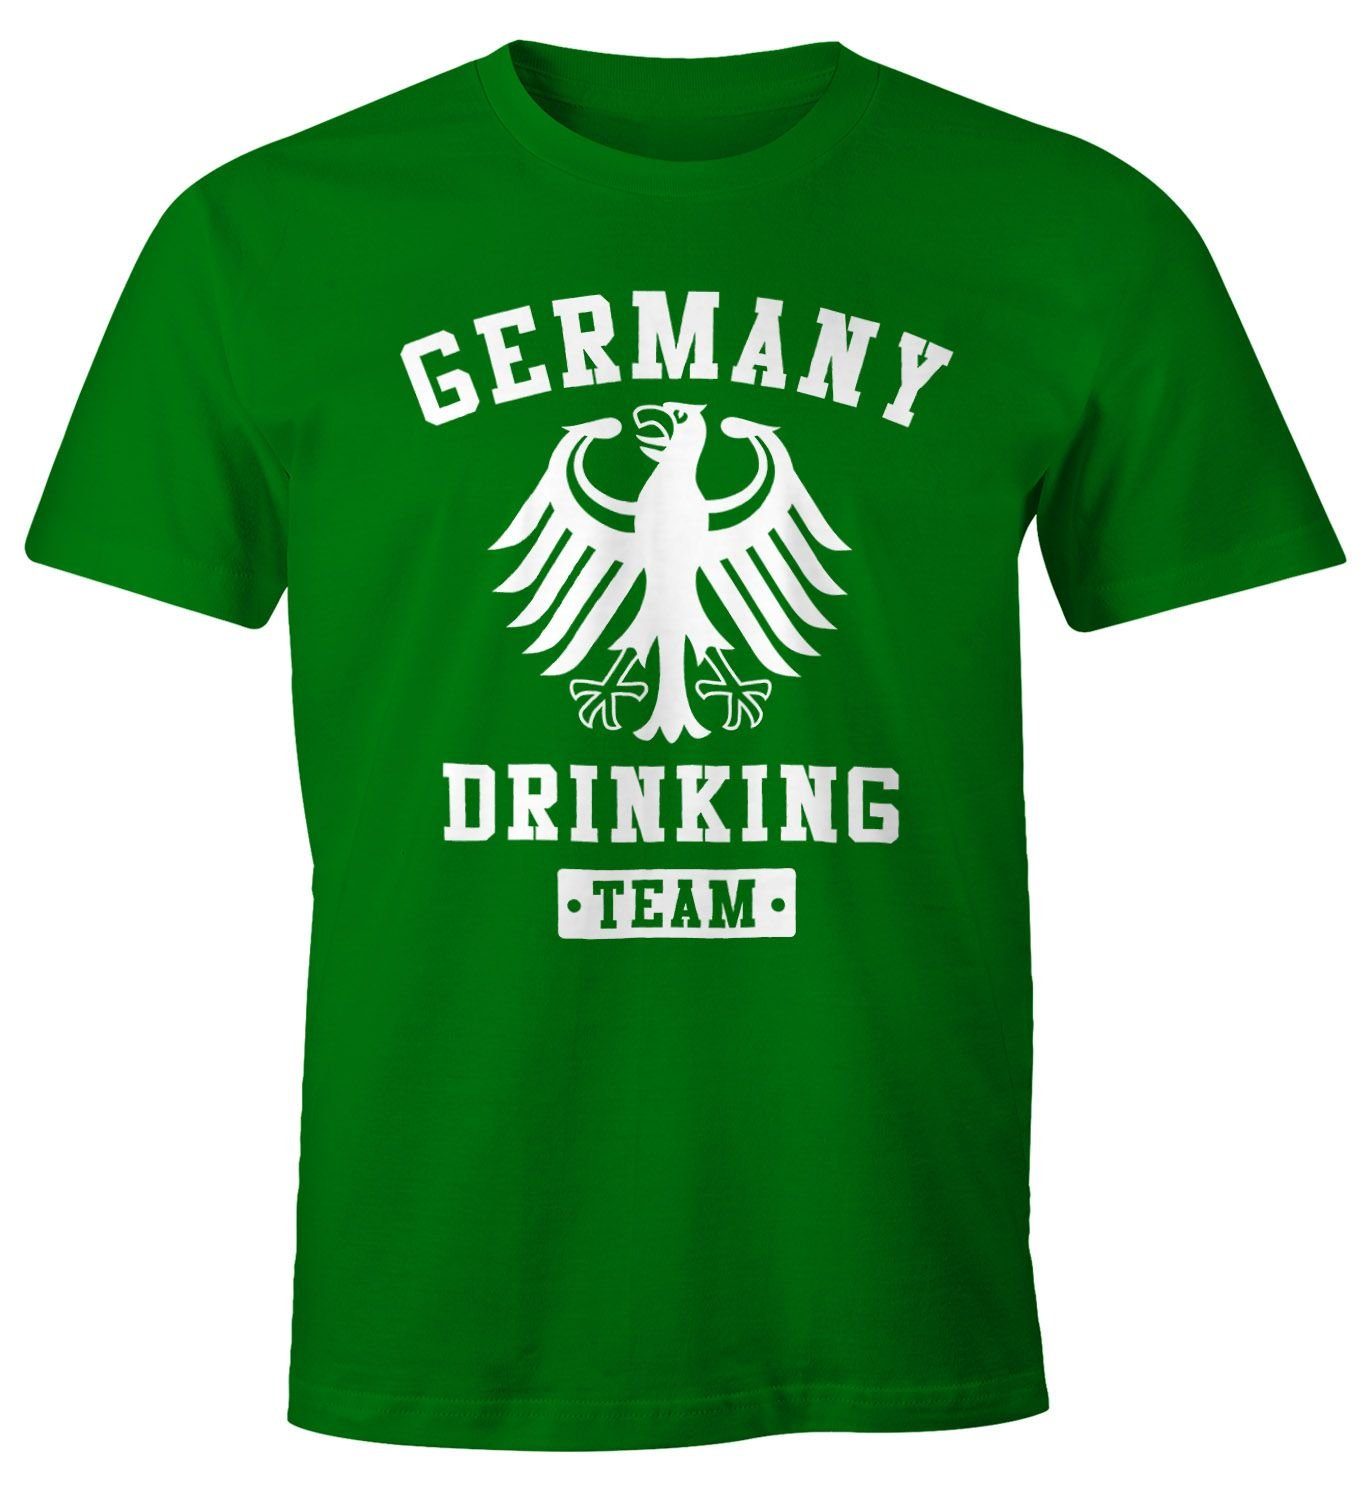 MoonWorks Print-Shirt Deutschland Herren T-Shirt Germany Drinking Team Bier Adler Fun-Shirt Moonworks® mit Print grün